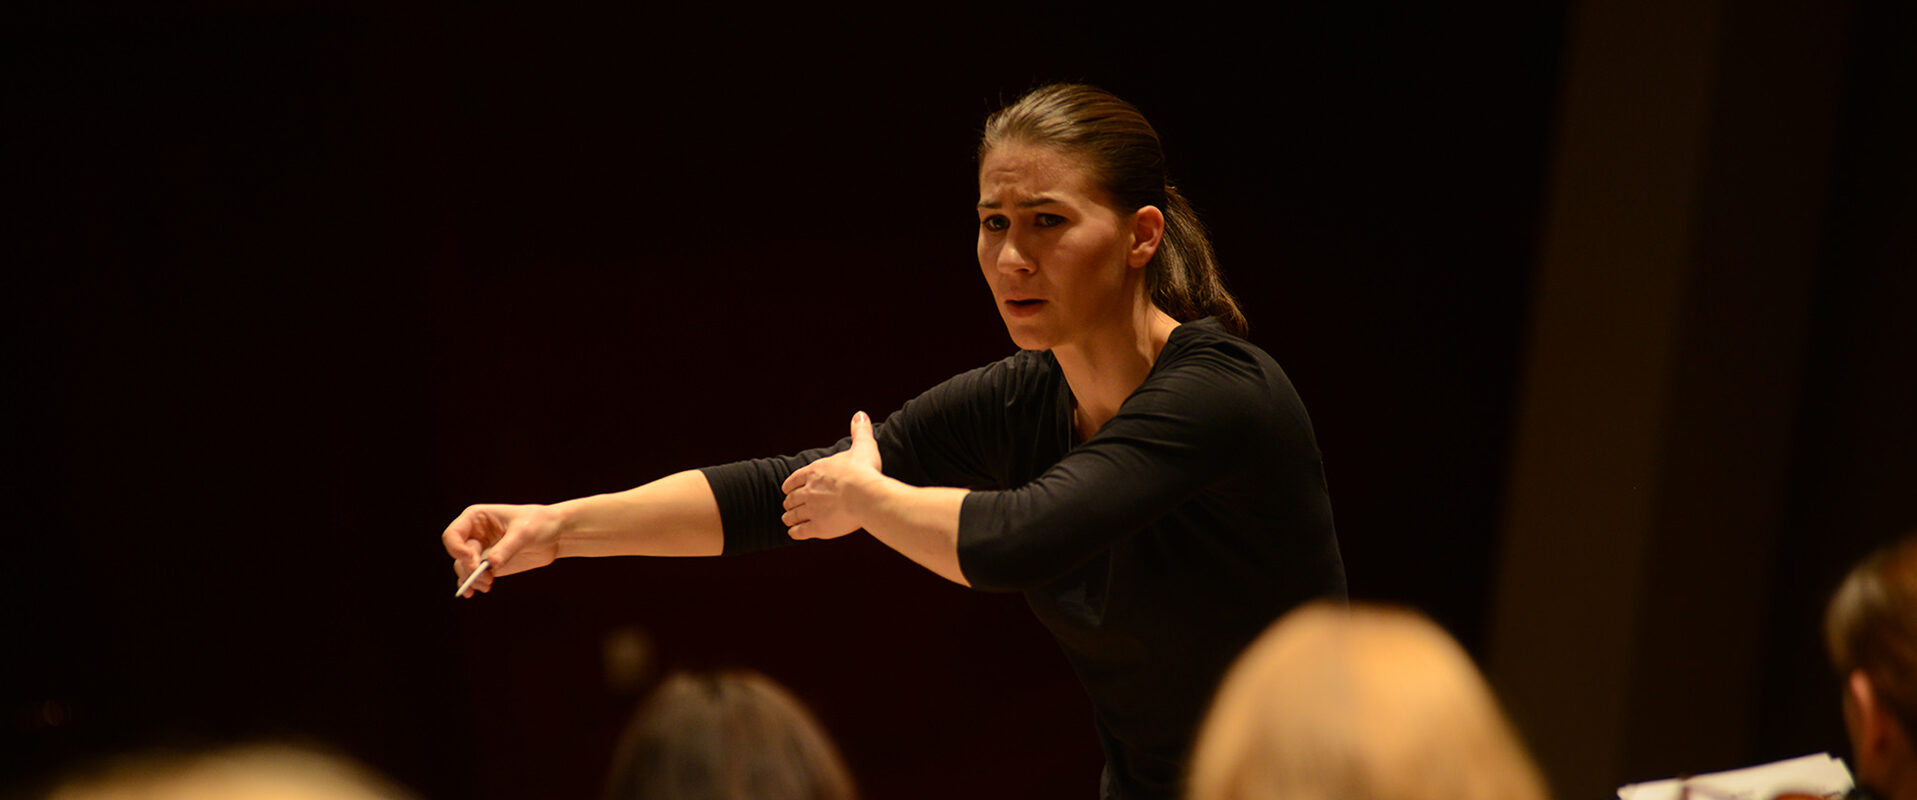 Wideo o dyrygentce Marcie Gardolińskiej realizuje Instytut Polski w Paryżu